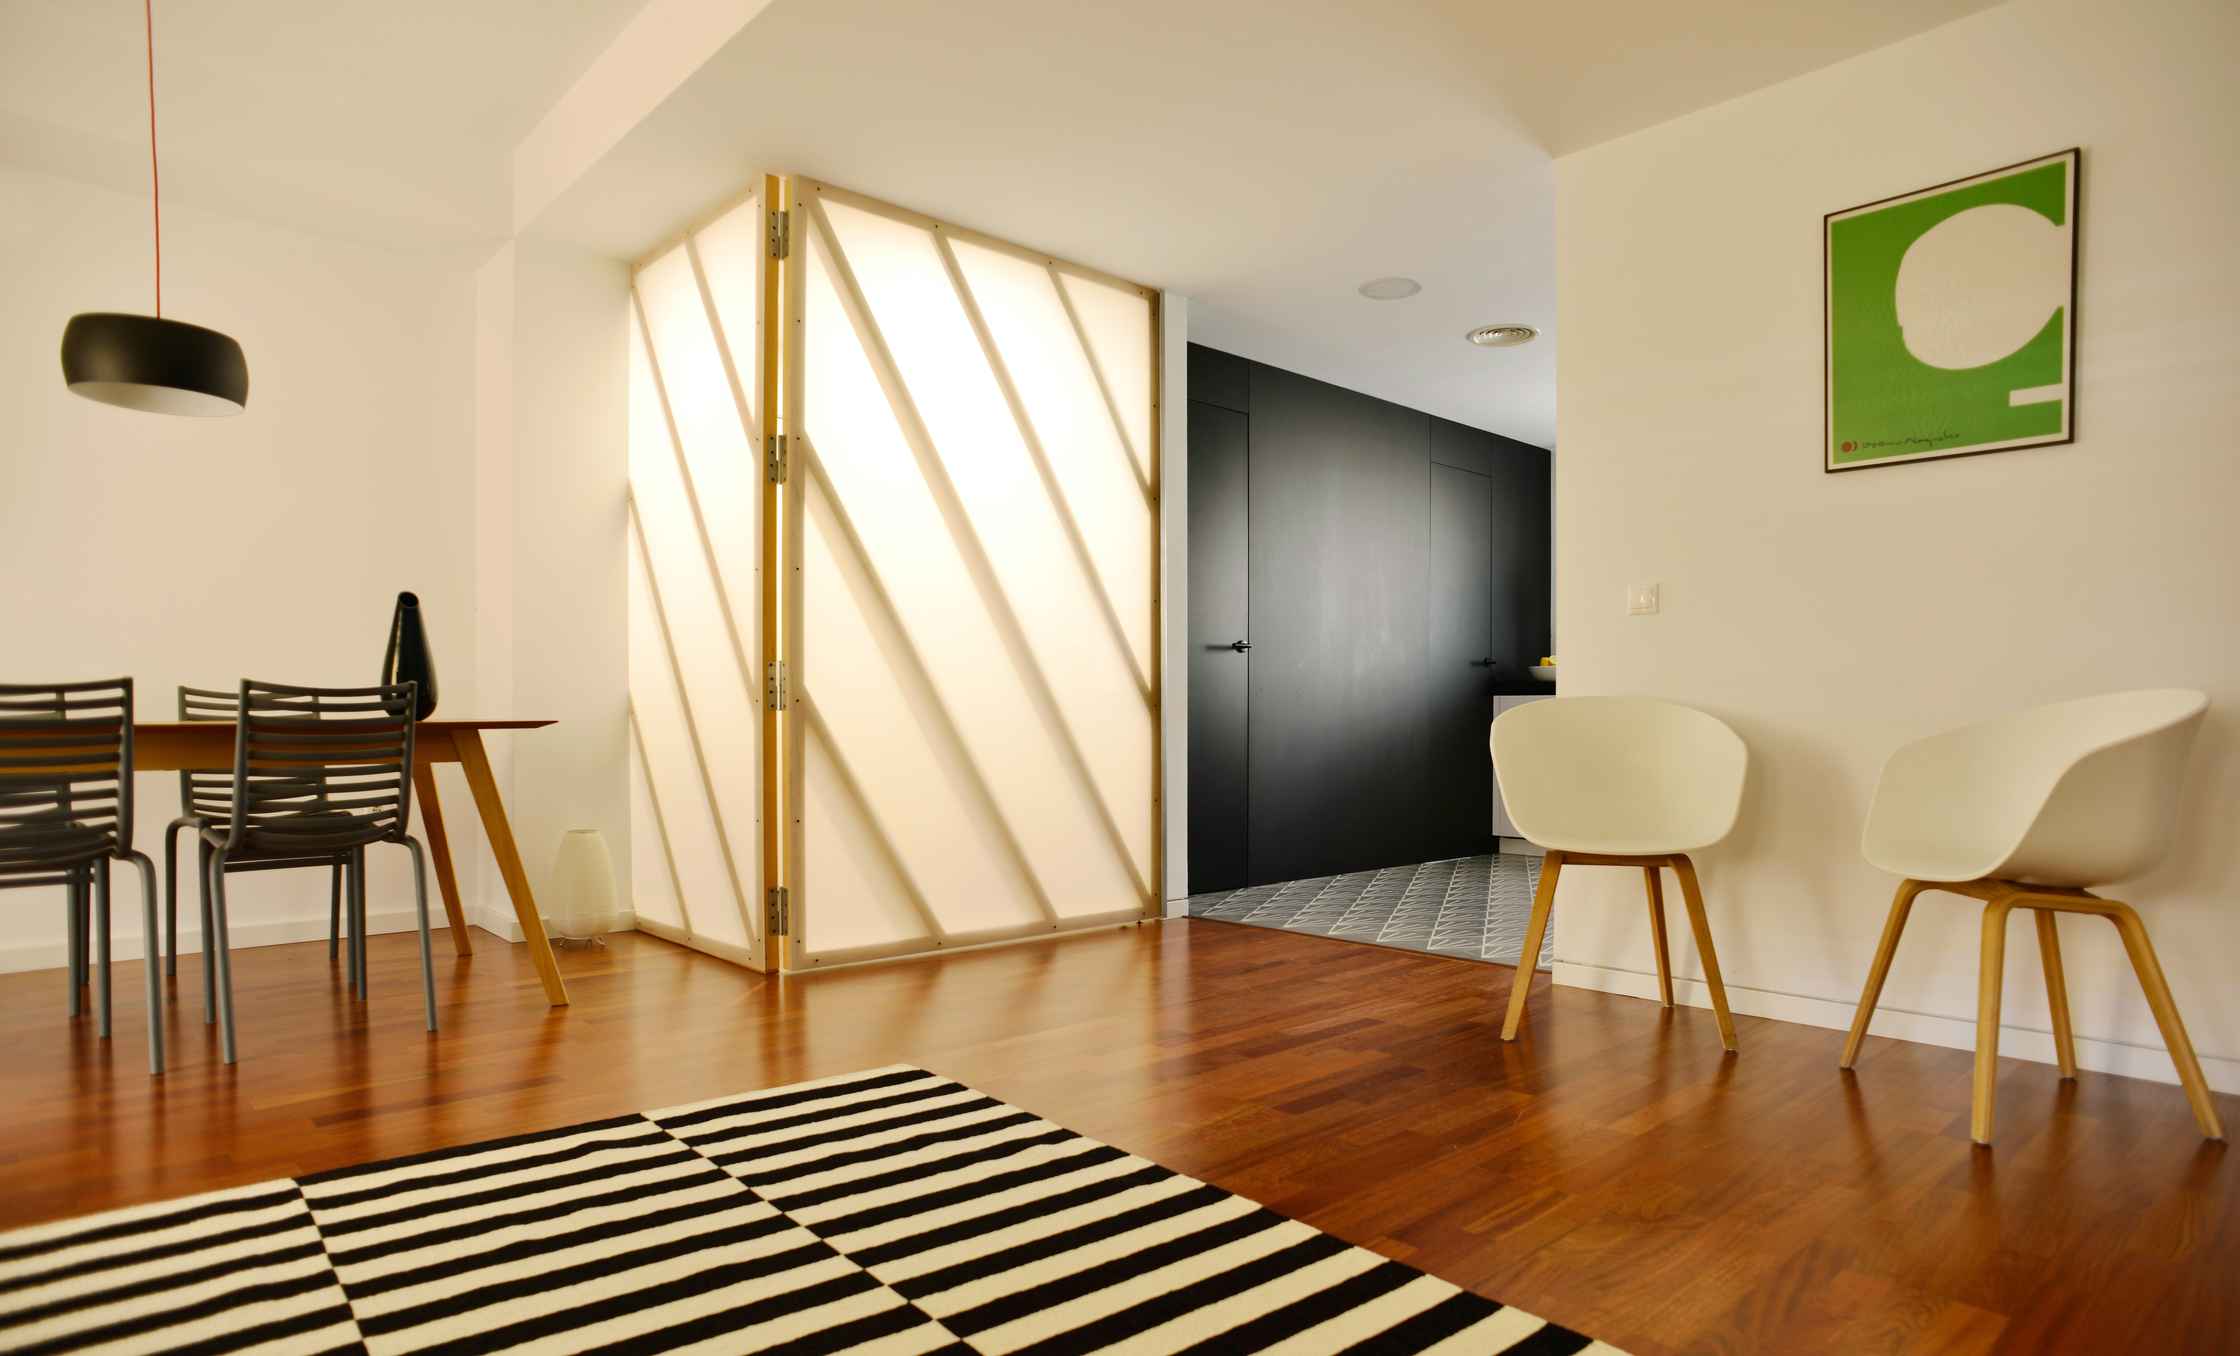 Reforma integral e interiorismo con un diseño actual y contemporáneo. En LAP arquitectos buscamos crear espacios singulares, confortables y creativos.